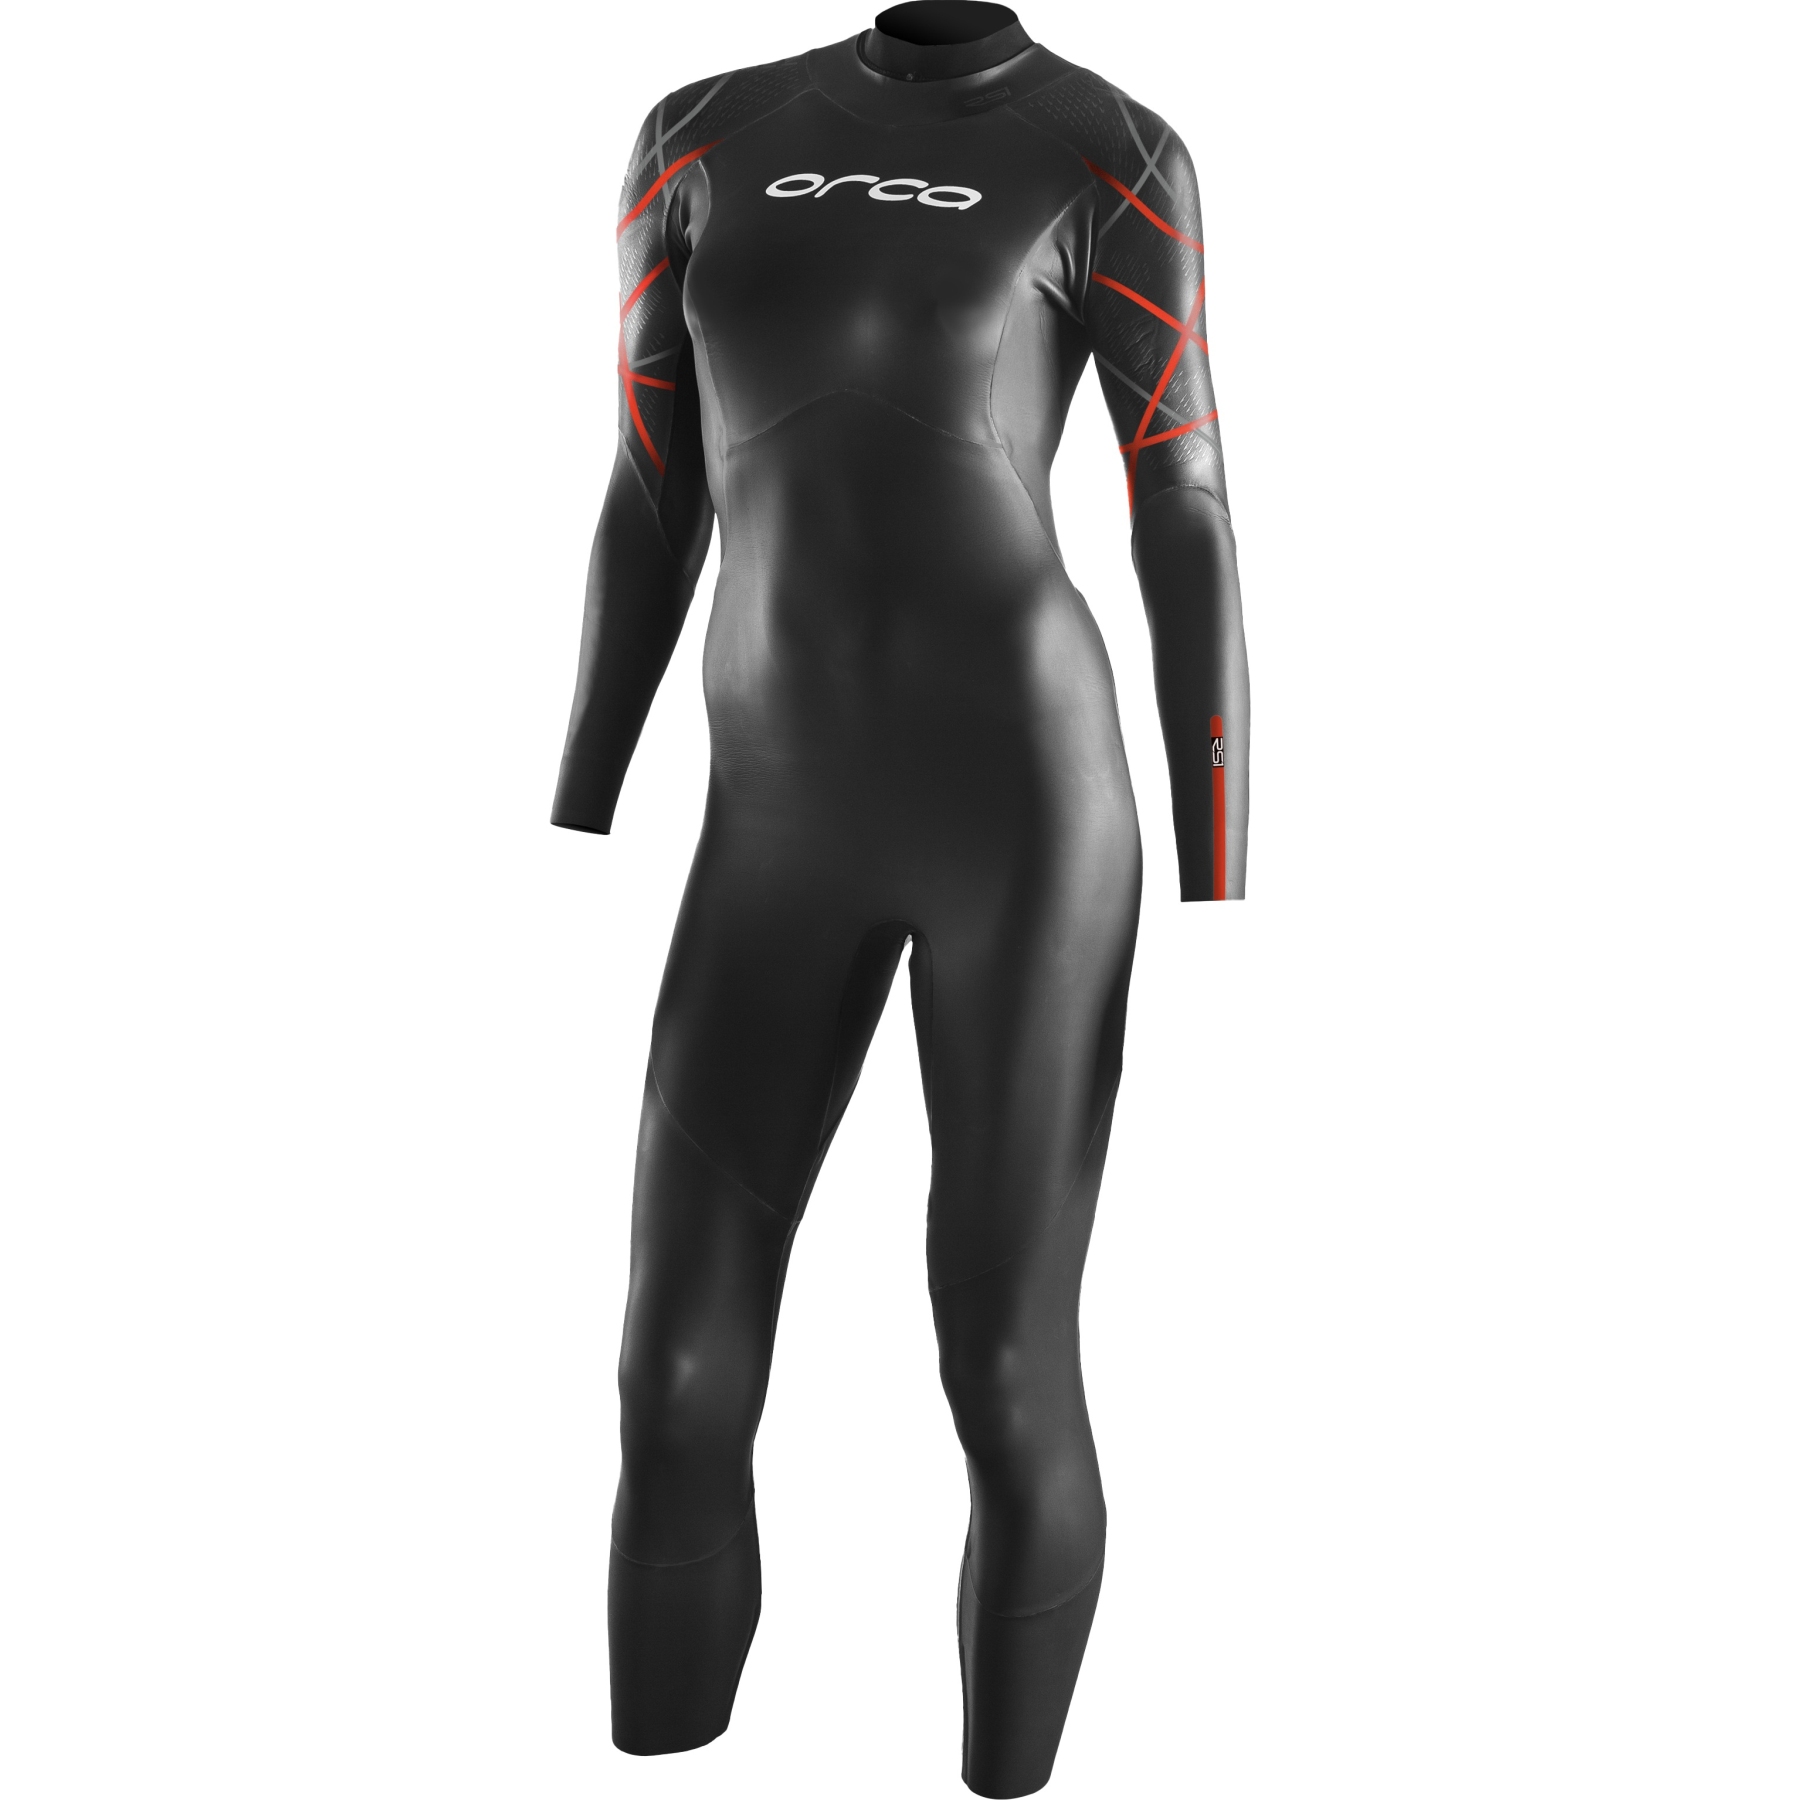 Produktbild von Orca Openwater RS1 Thermal Damen Neoprenanzug - black